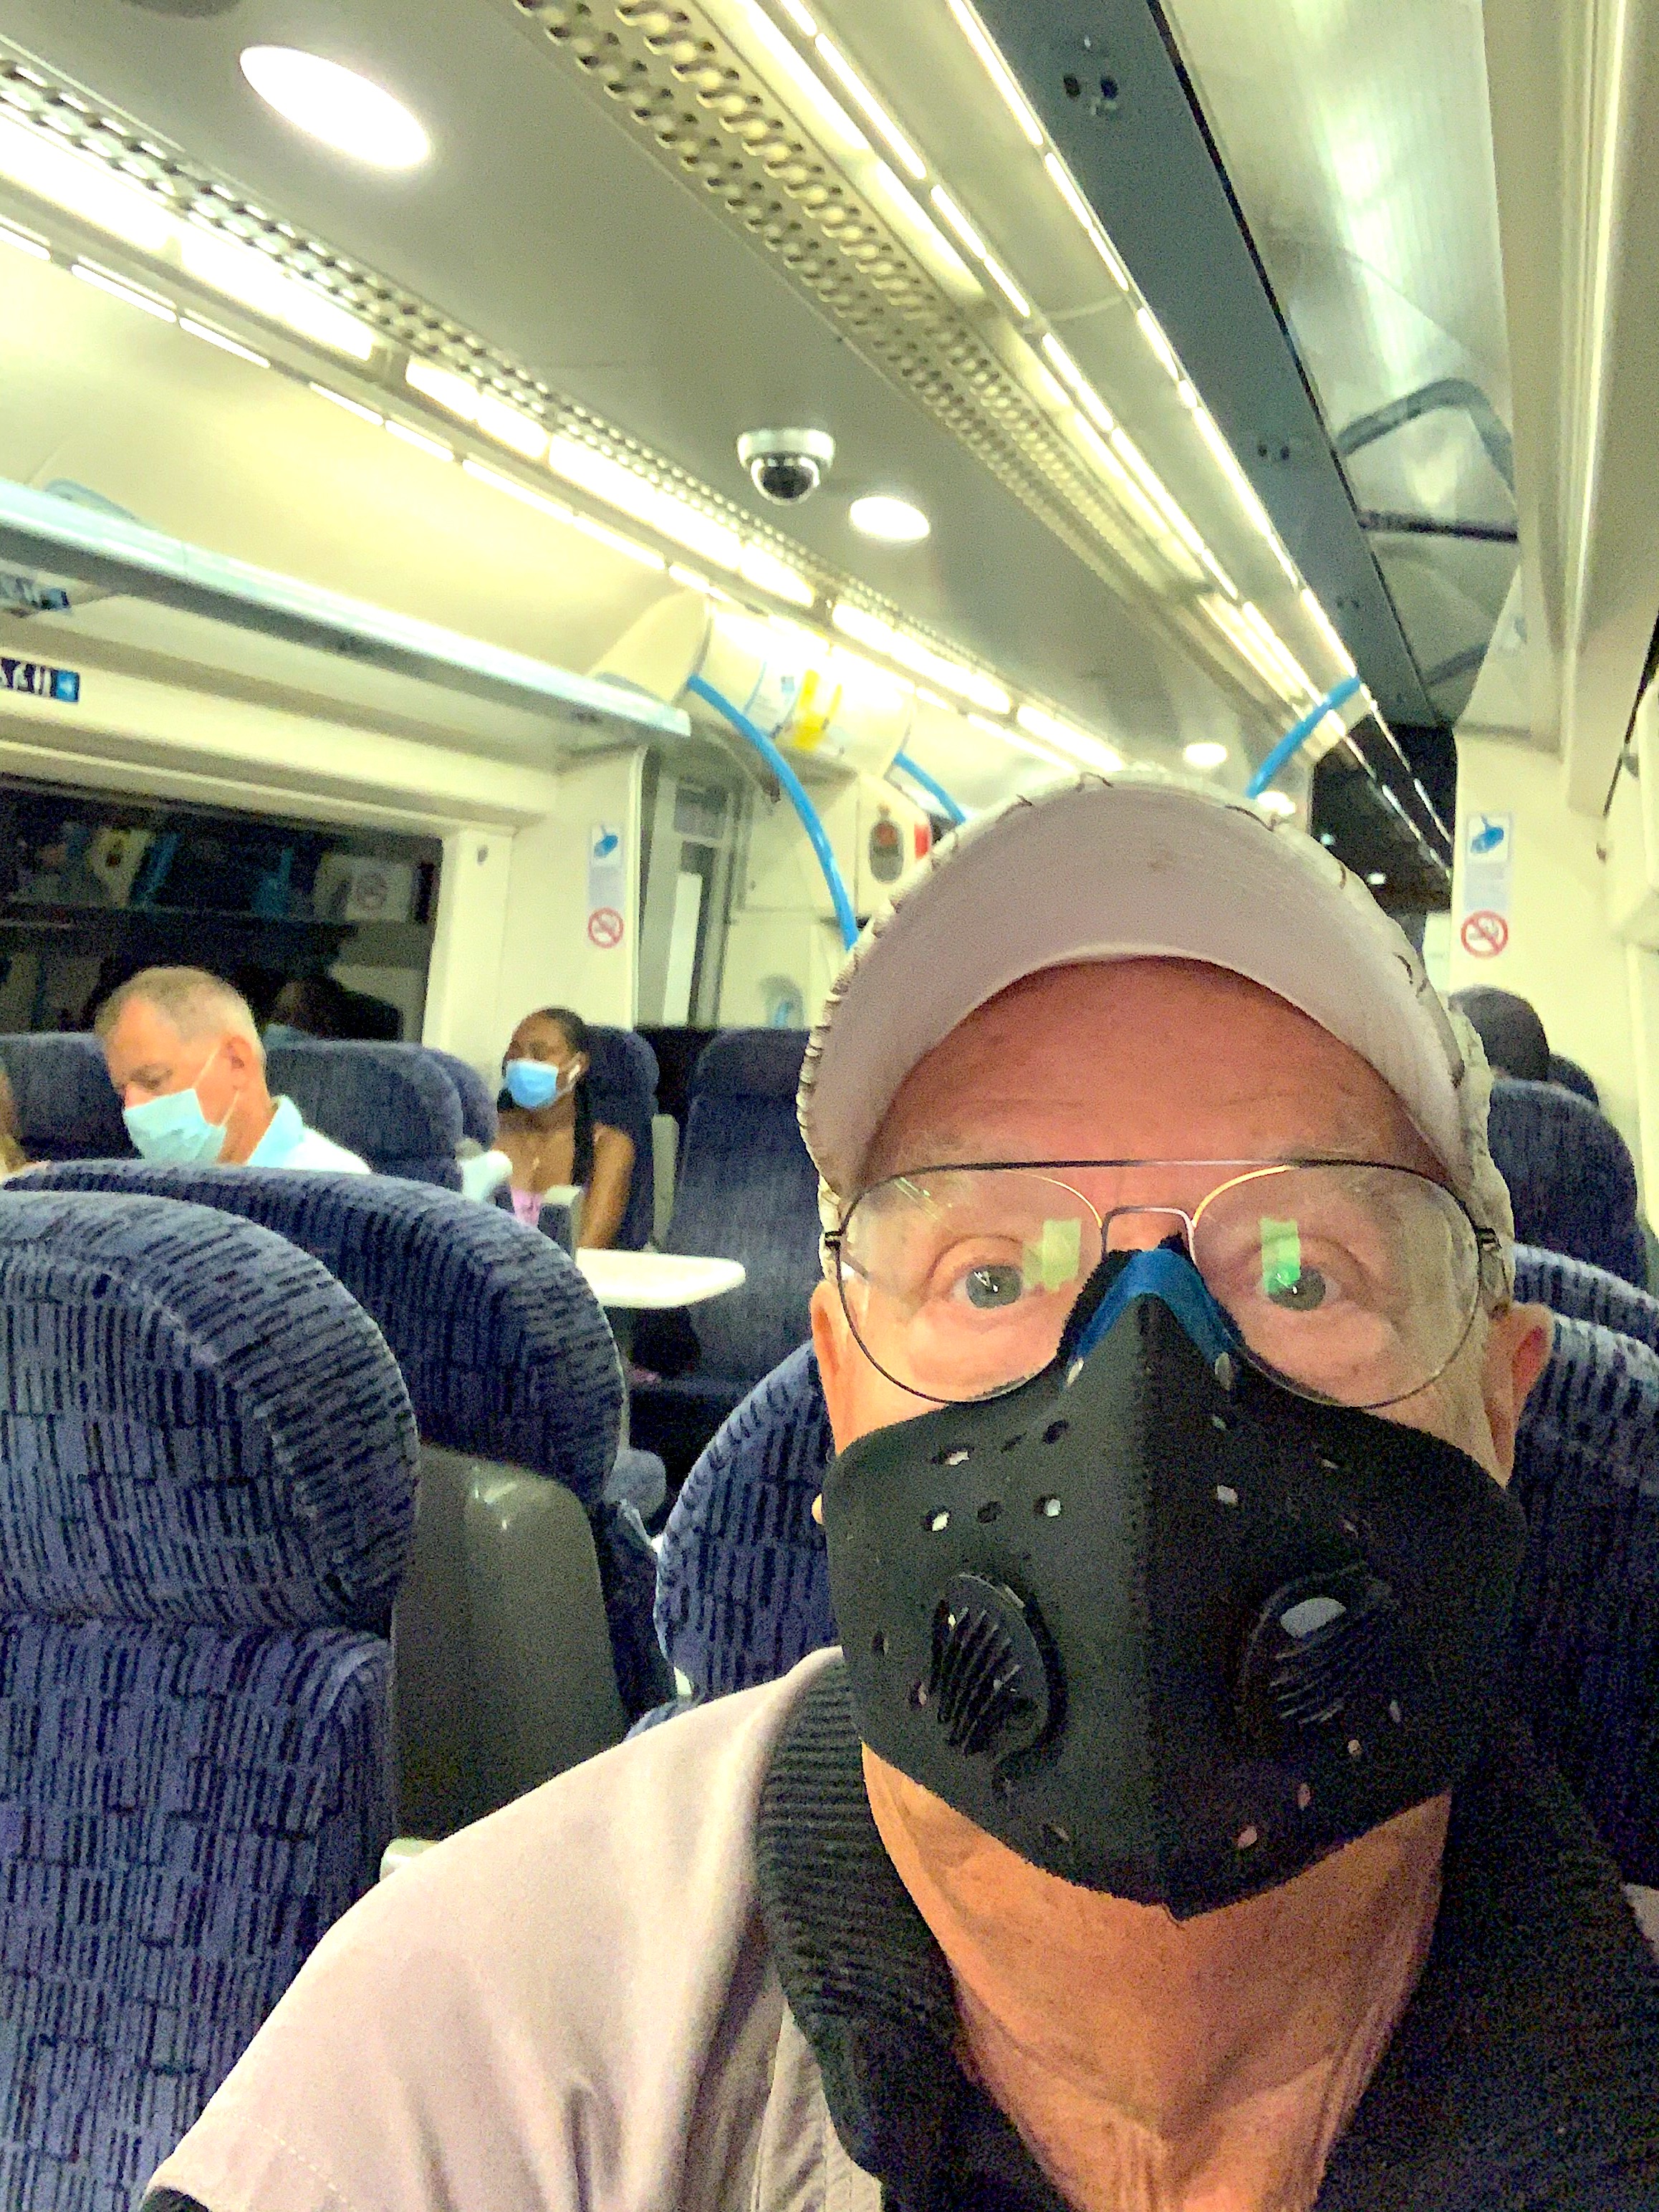 Mad masked man on train